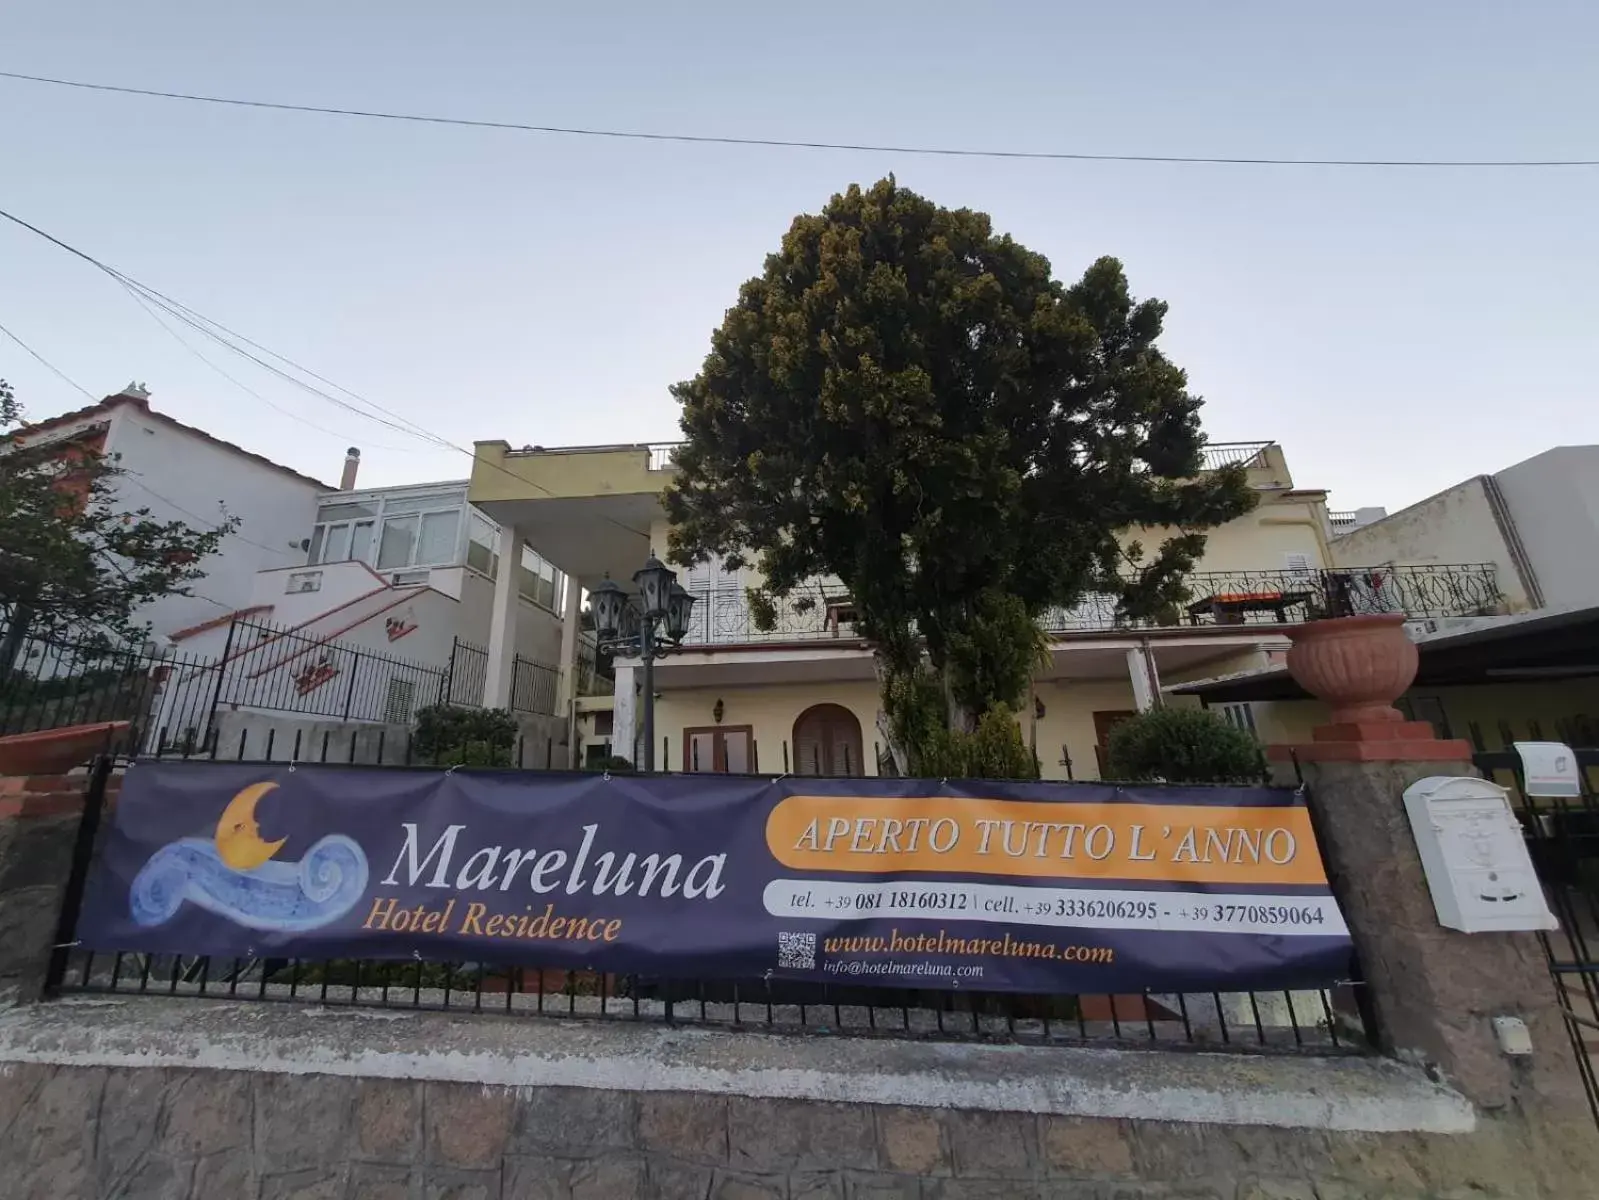 Logo/Certificate/Sign, Property Building in Hotel Mareluna Ischia